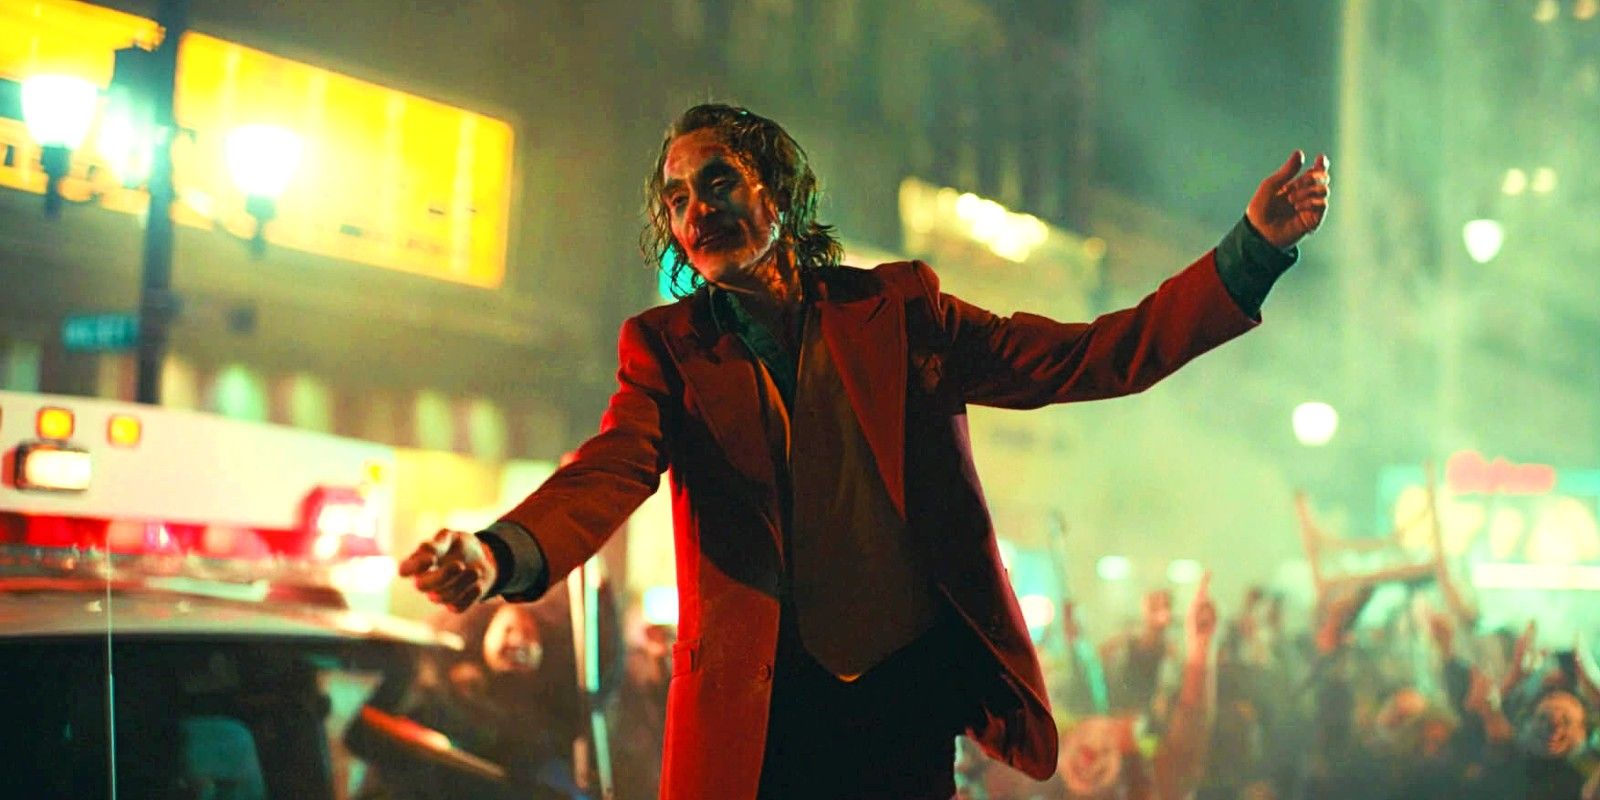 Joker 2 Set Video Reveals Three Versions Of Joaquin Phoenix’s Joker